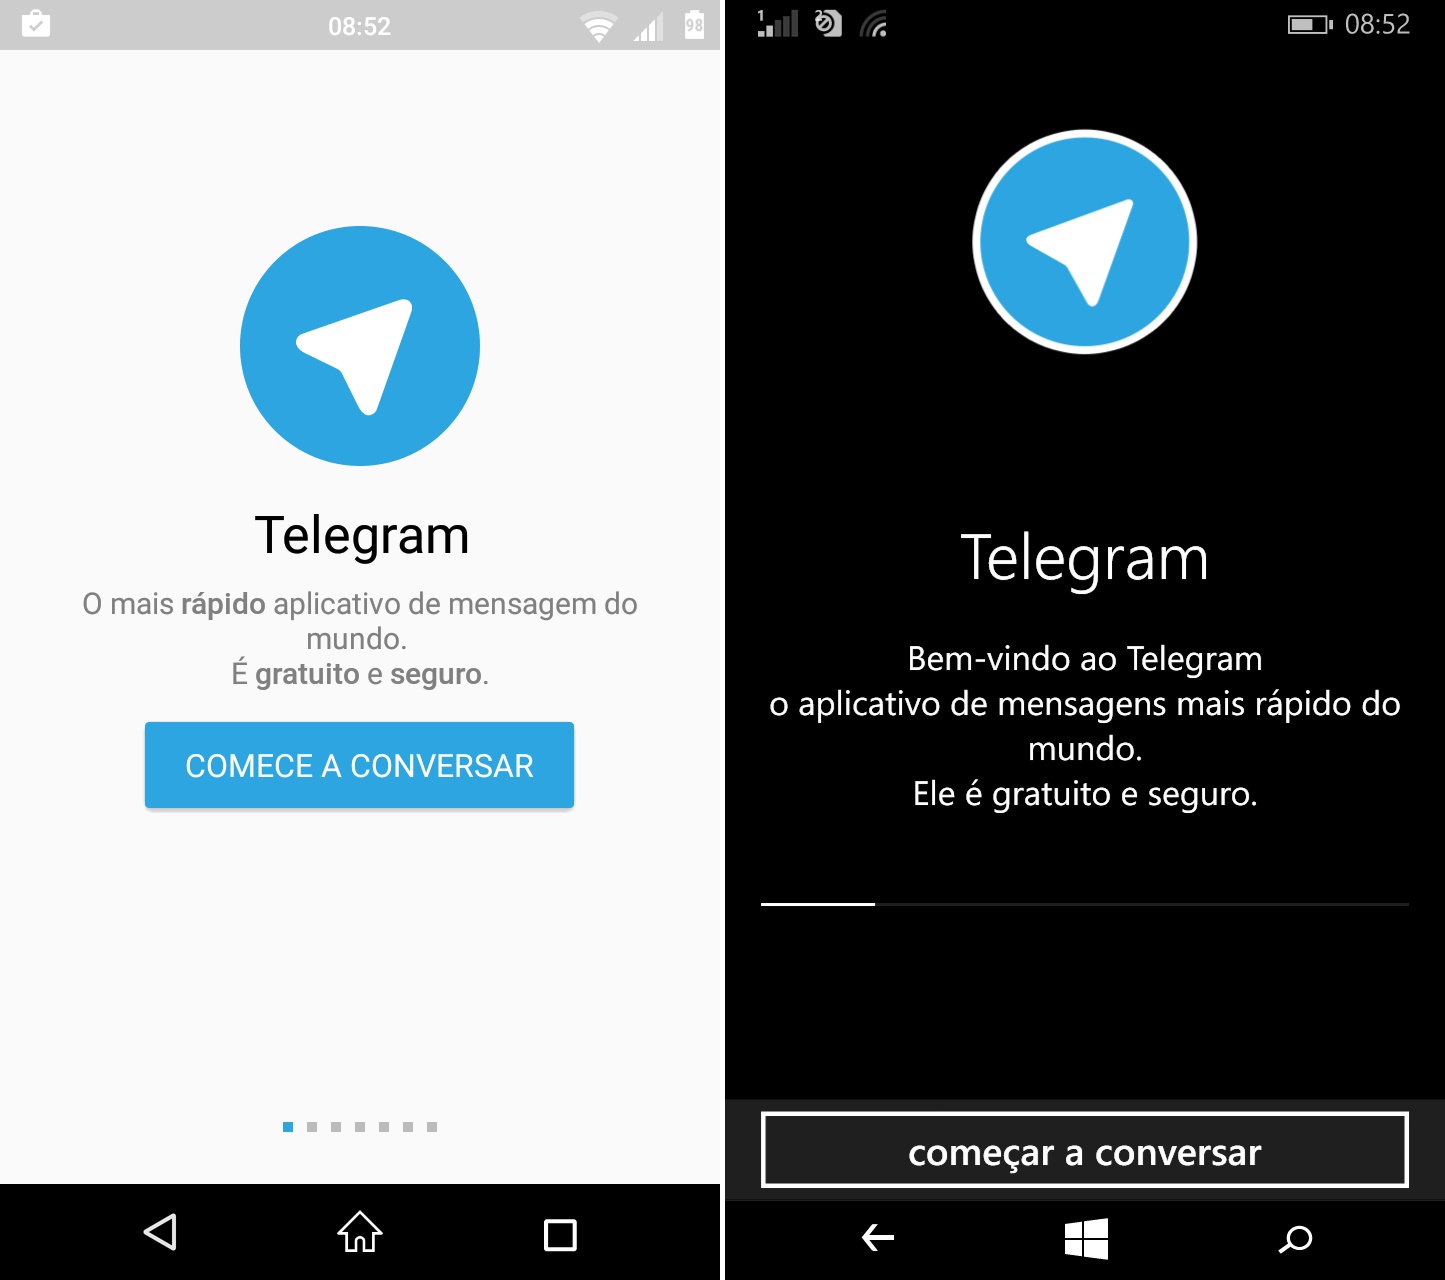 comparativo de apps #11 telegram - 1